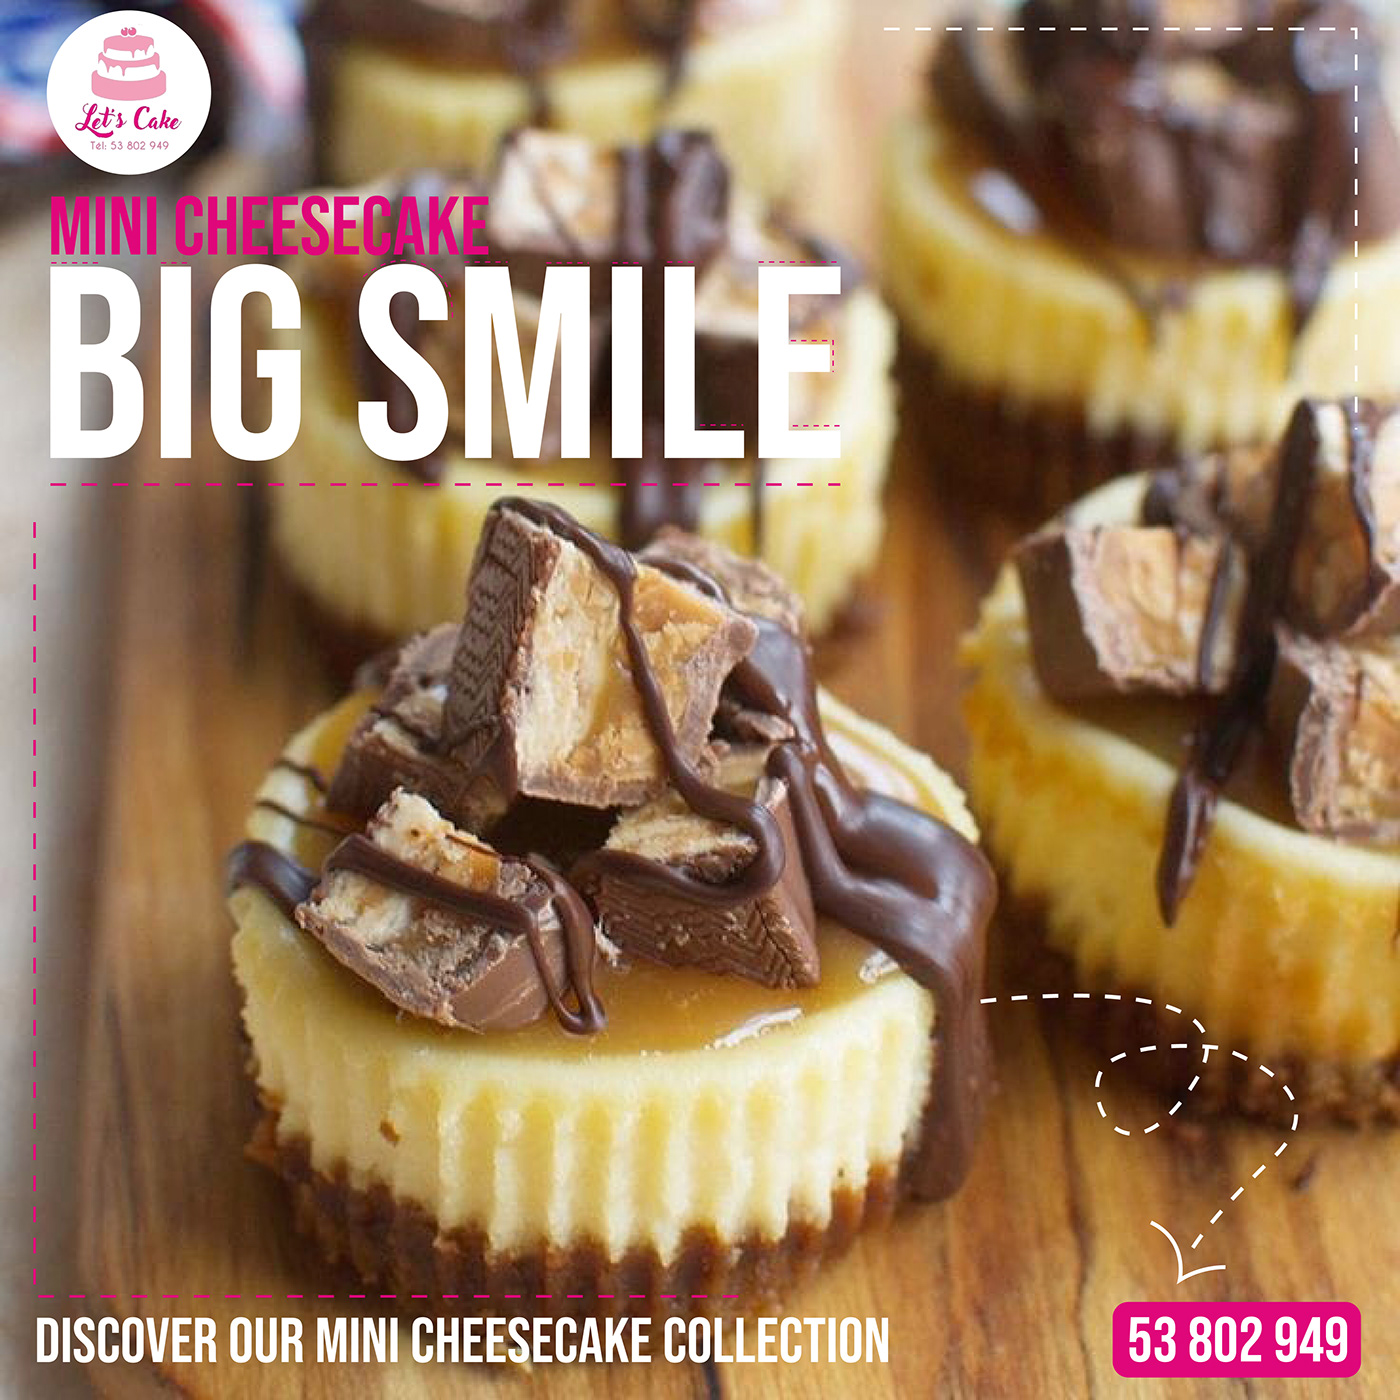 cake chocolate Advertising  post brownie Chokolate milk Food  marketing   ads